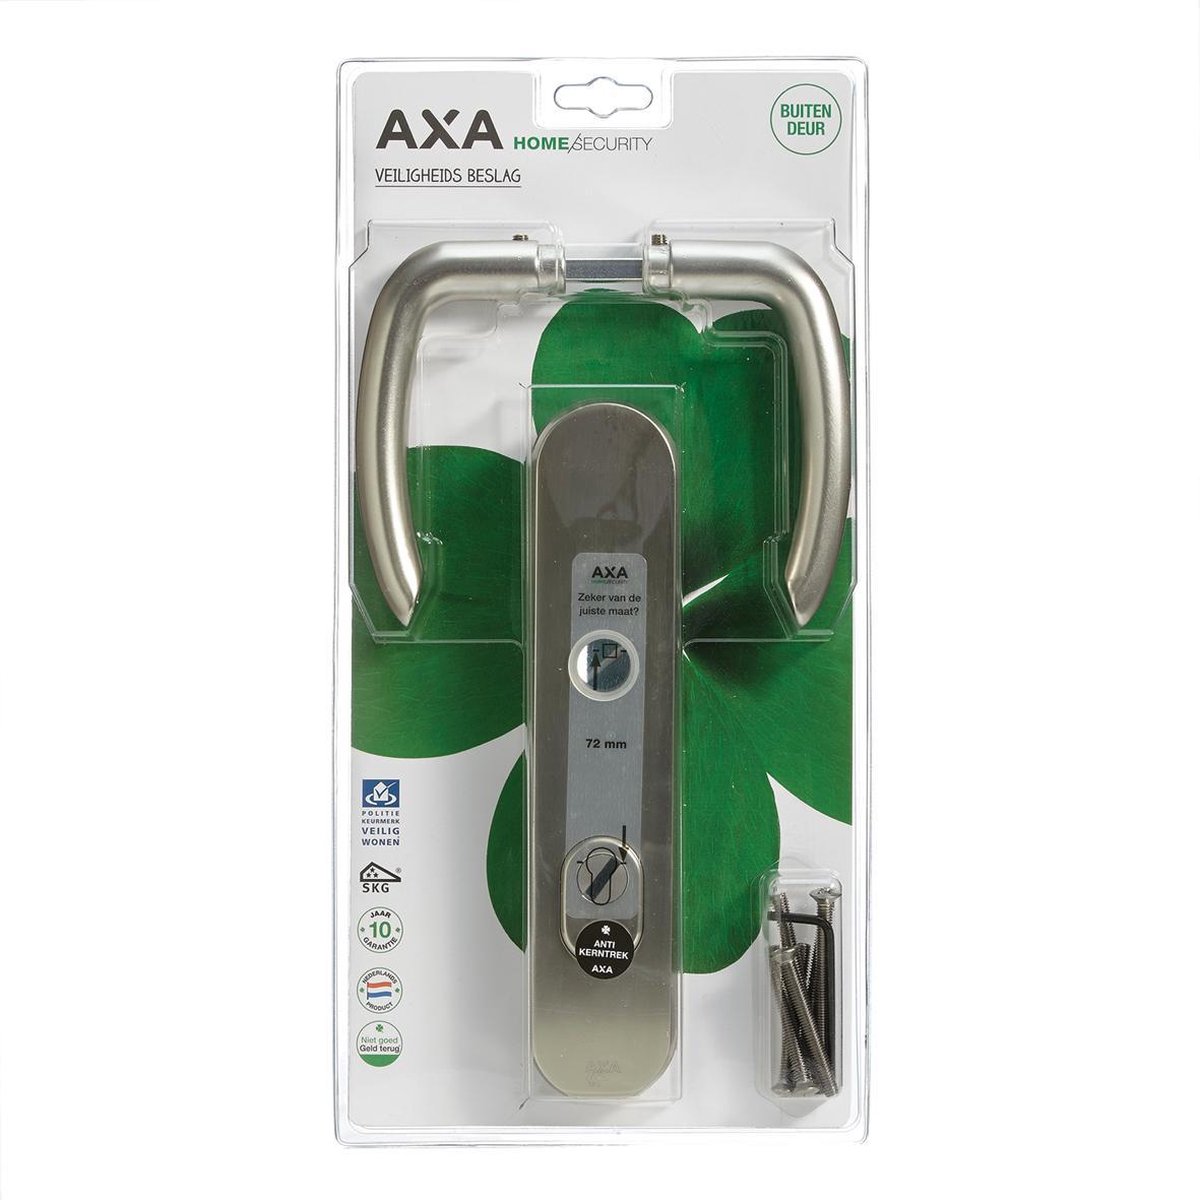 AXA Veiligheidsbeslag kruk PC72 anti-kerntrek